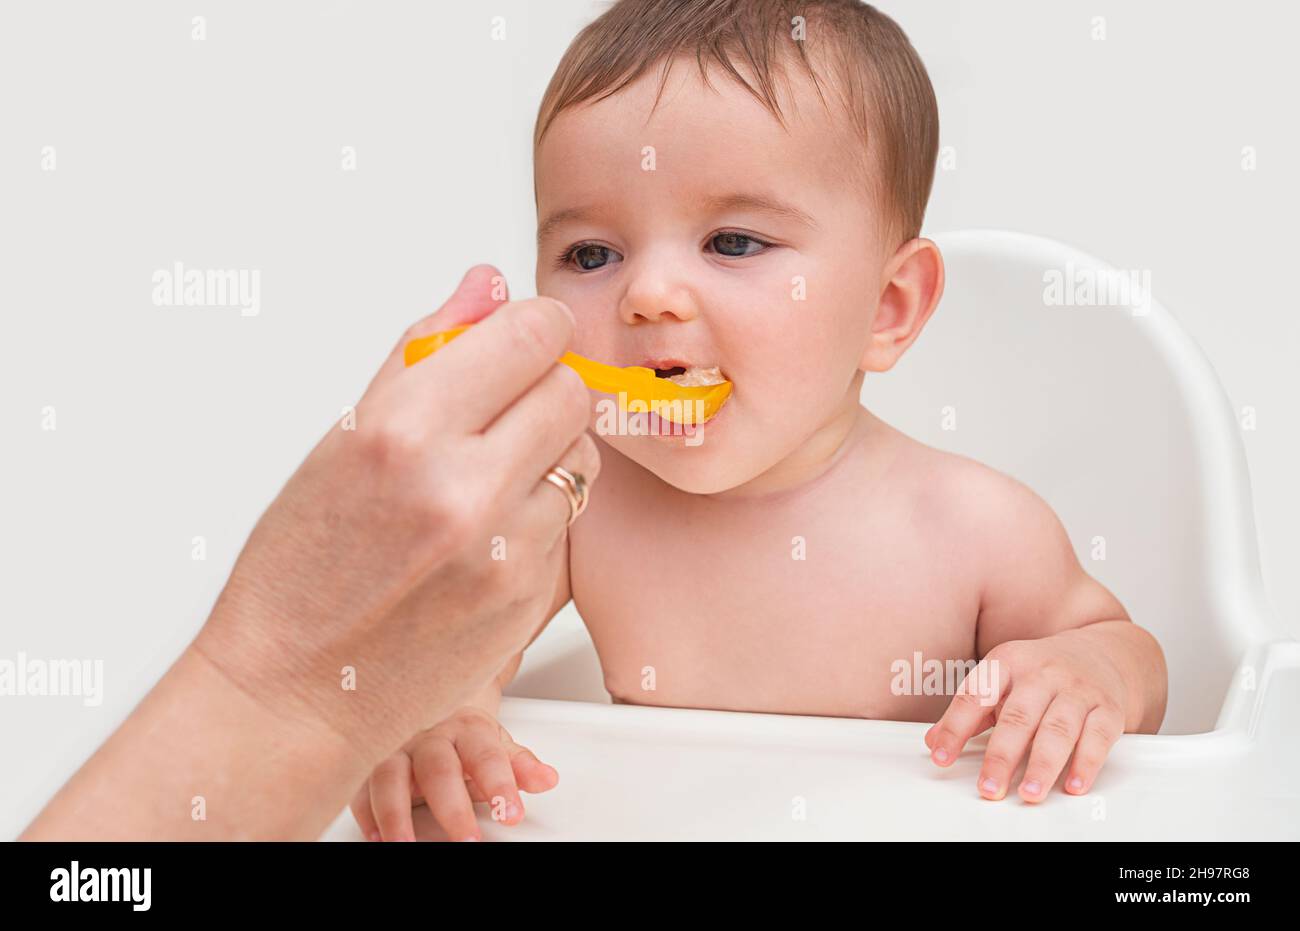 la première tétée du bébé. l'enfant ouvre sa bouche pour manger de la purée d'orange naturelle à partir d'une cuillère d'orange de la main de sa mère Banque D'Images